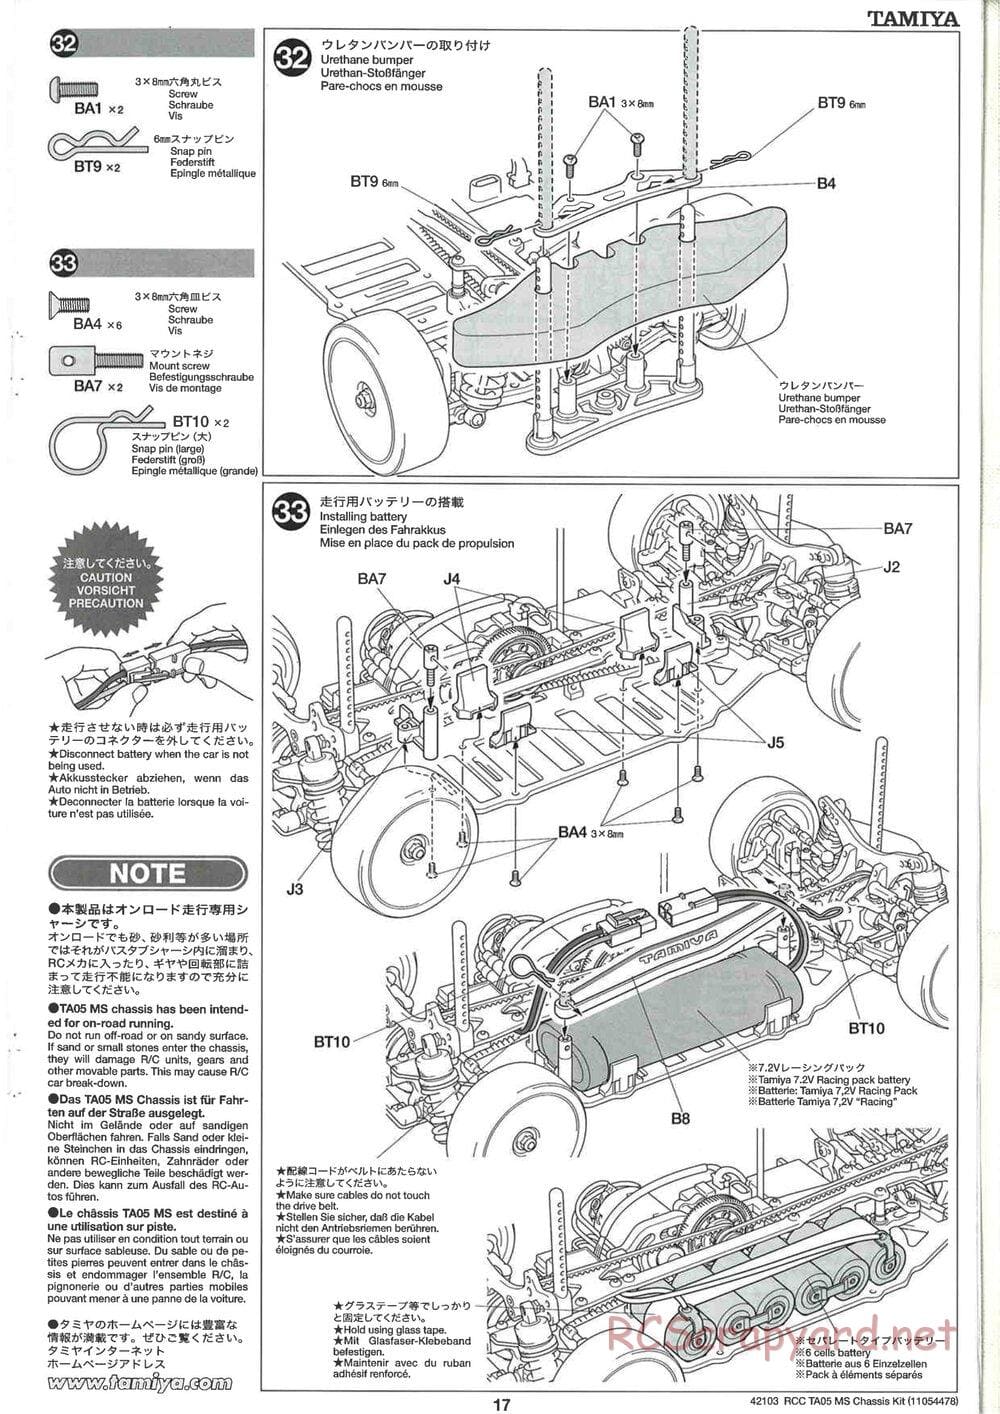 Tamiya - TA05 MS Chassis - Manual - Page 17